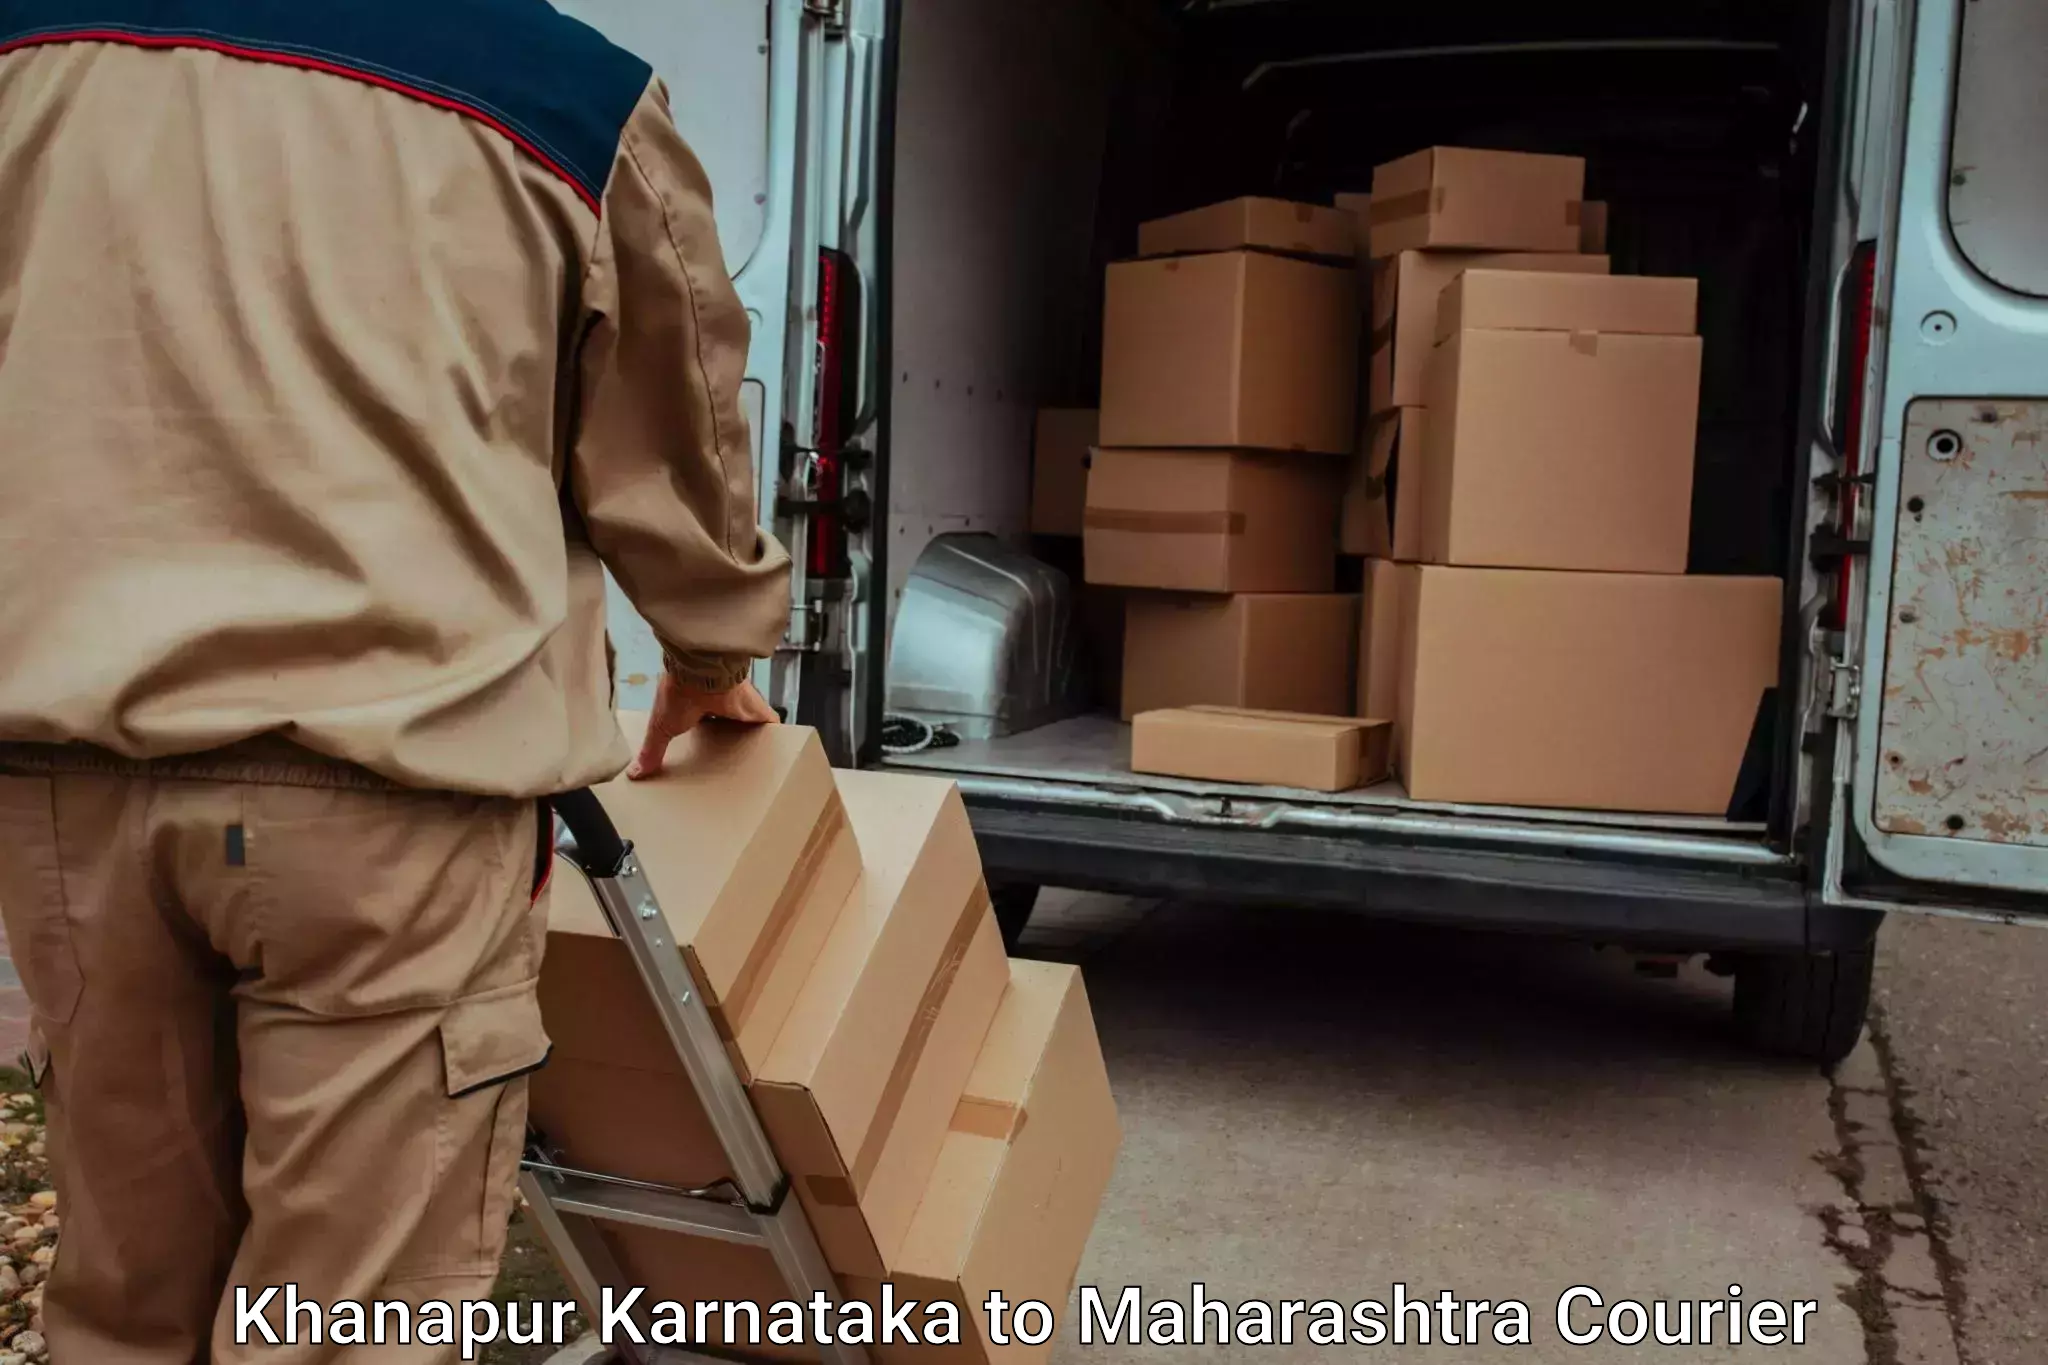 Furniture transport service Khanapur Karnataka to Maharashtra